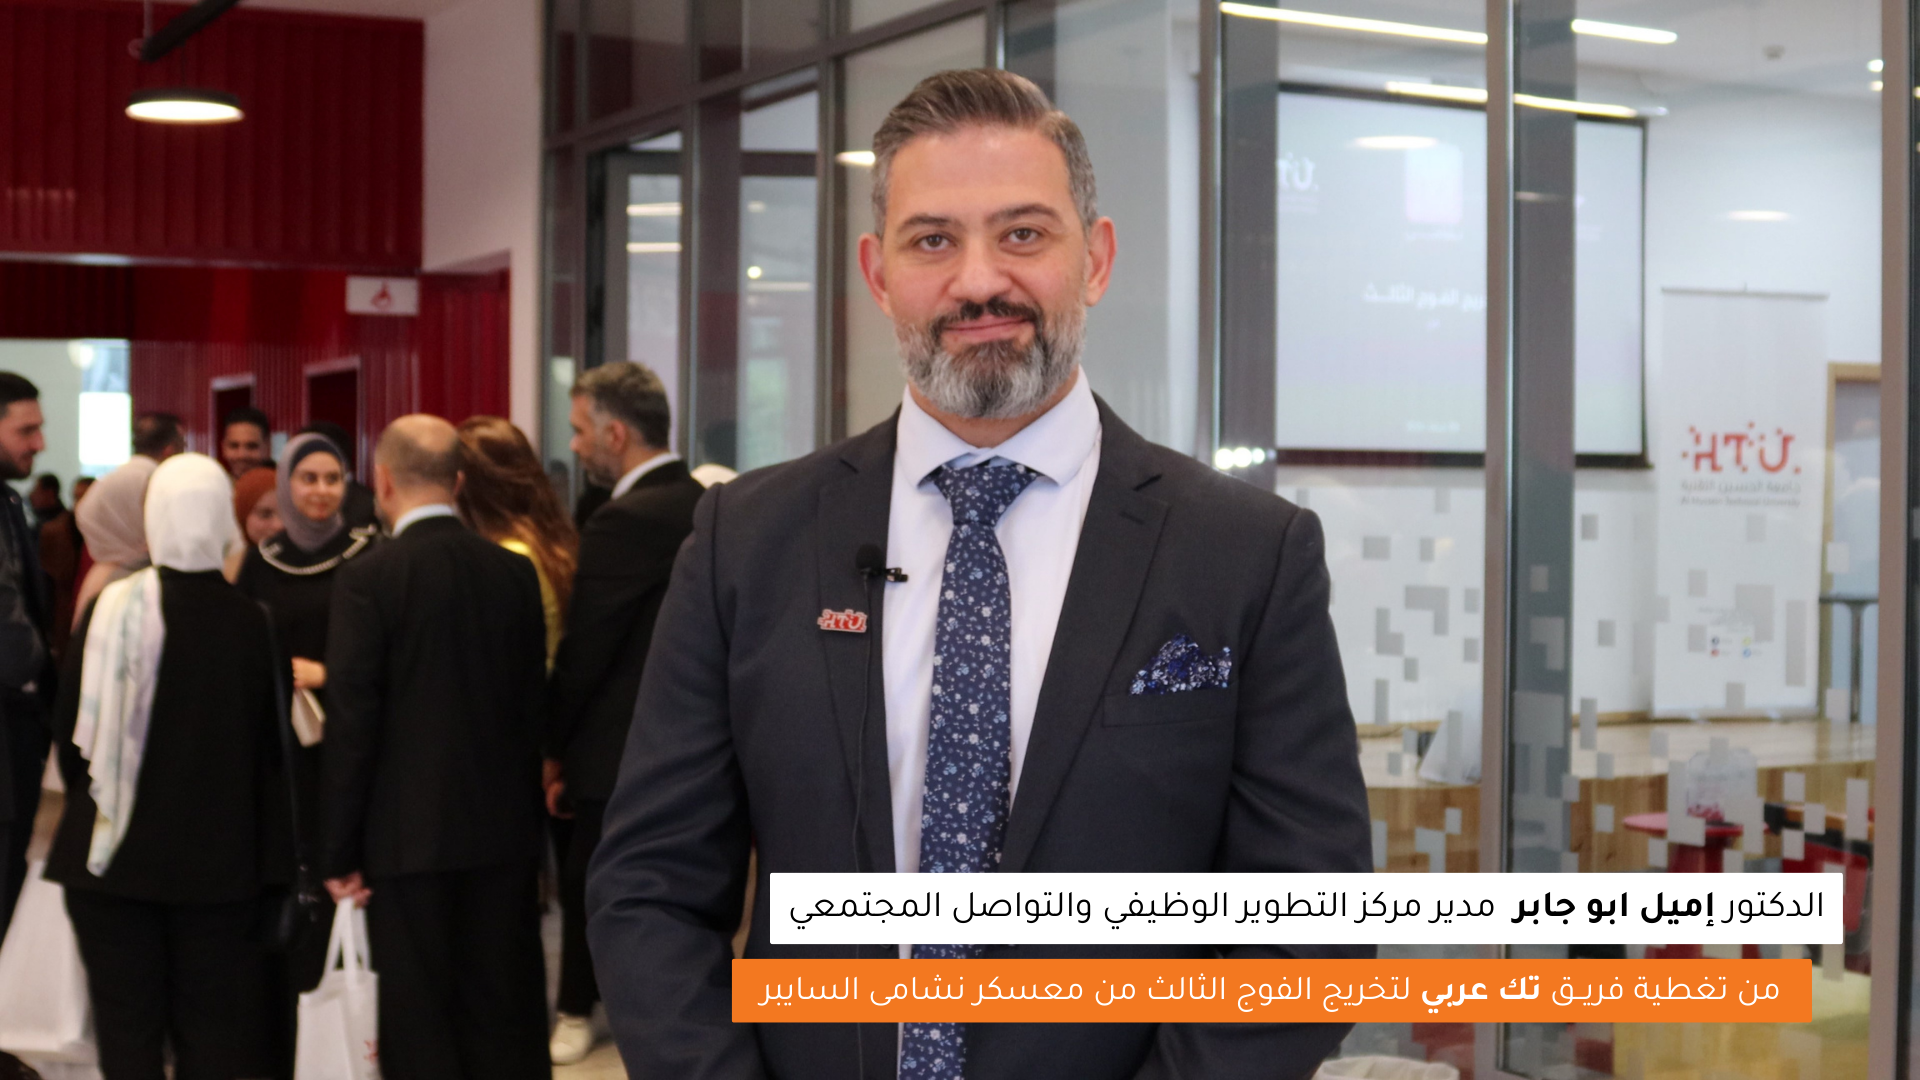 مقابلة فريق تك عربي مع الدكتور إميل أبو جابر مدير مركز التطوير الوظيفي والتواصل المجتمعي